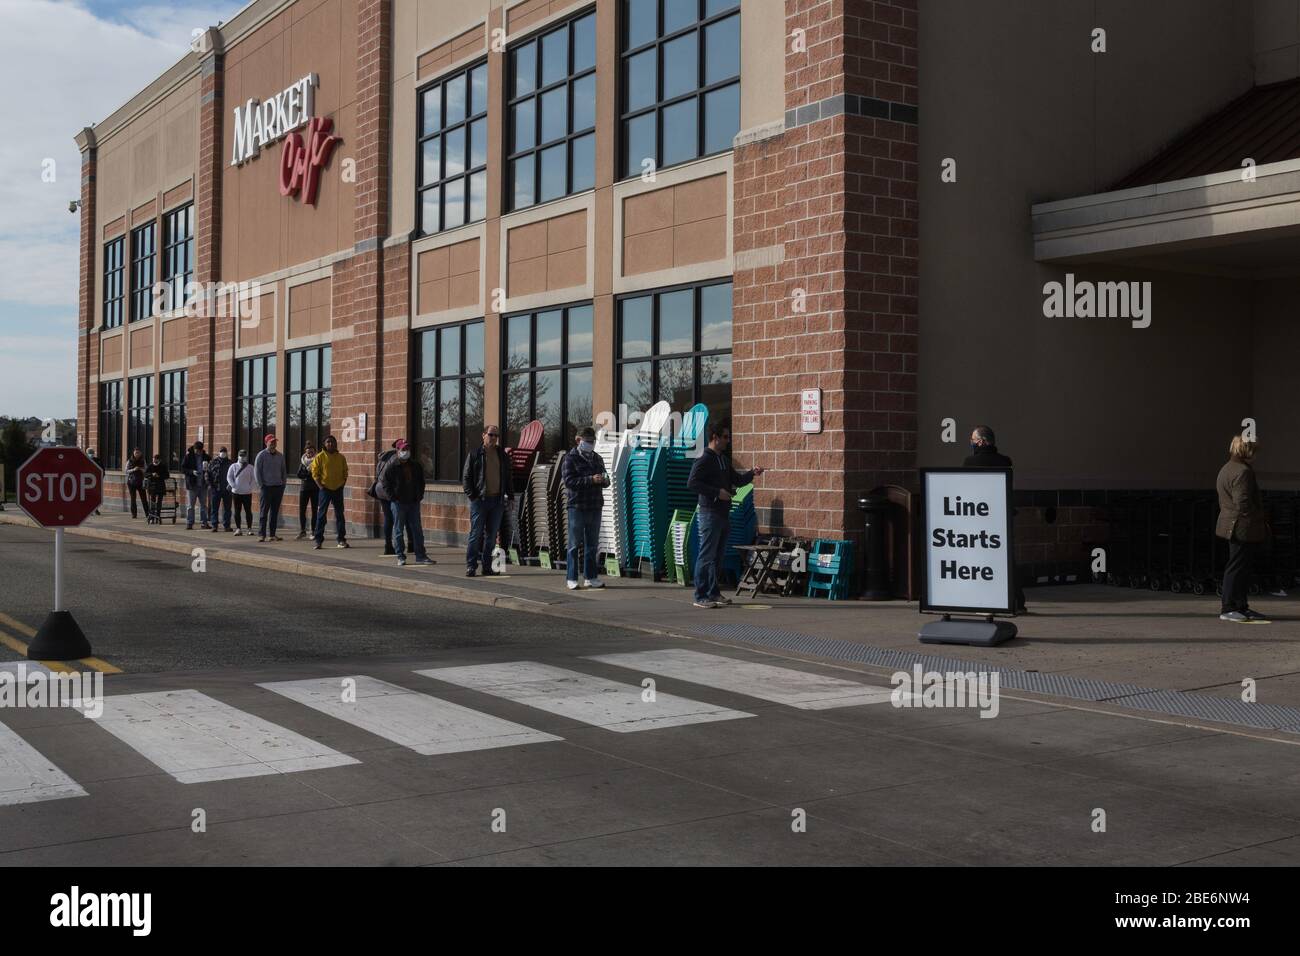 Covid-19, longue lignée de personnes forcées d'attendre pour entrer dans le magasin de nourriture dans la banlieue de Philadelphie, PA, 11 avril 2020 Banque D'Images